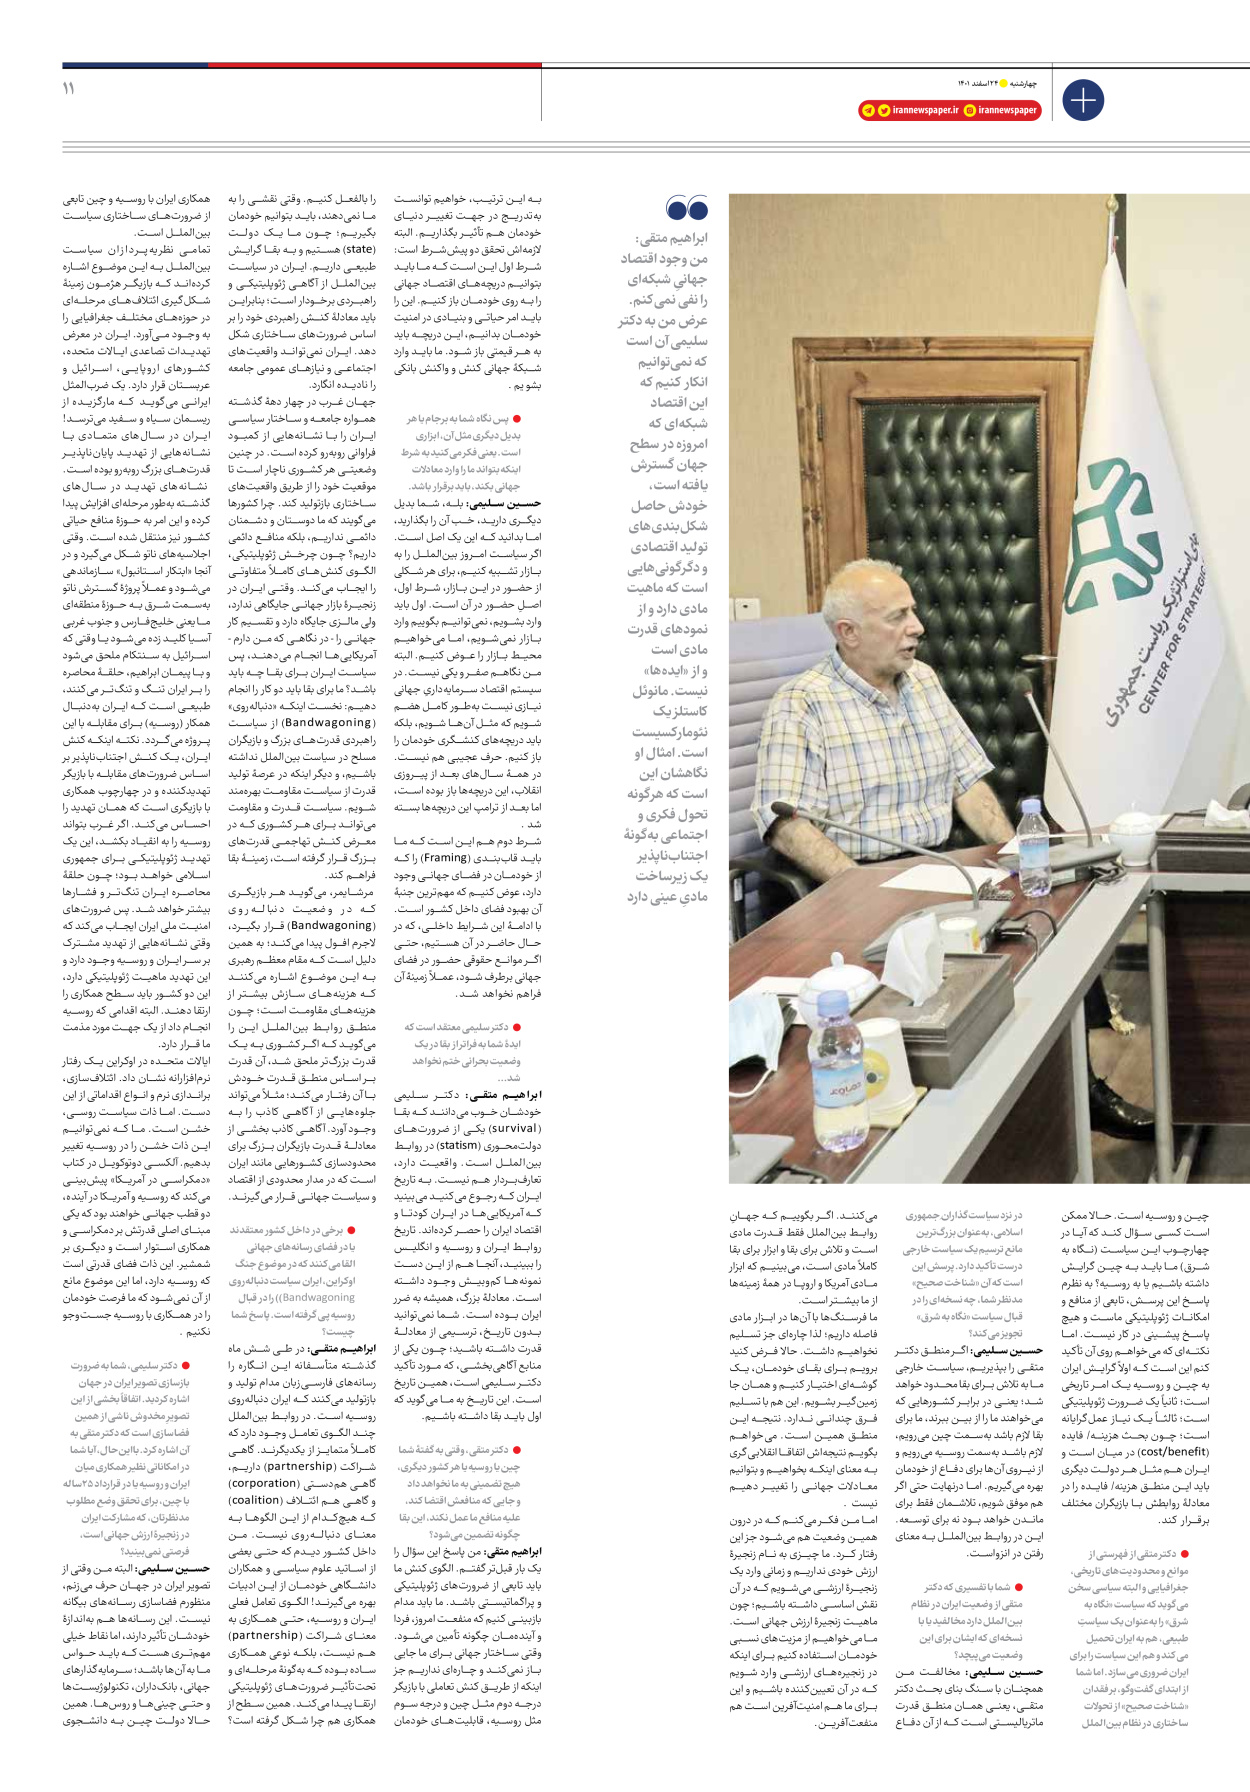 روزنامه ایران - ویژه نامه ویژه نوروز - ۲۴ اسفند ۱۴۰۱ - صفحه ۱۱